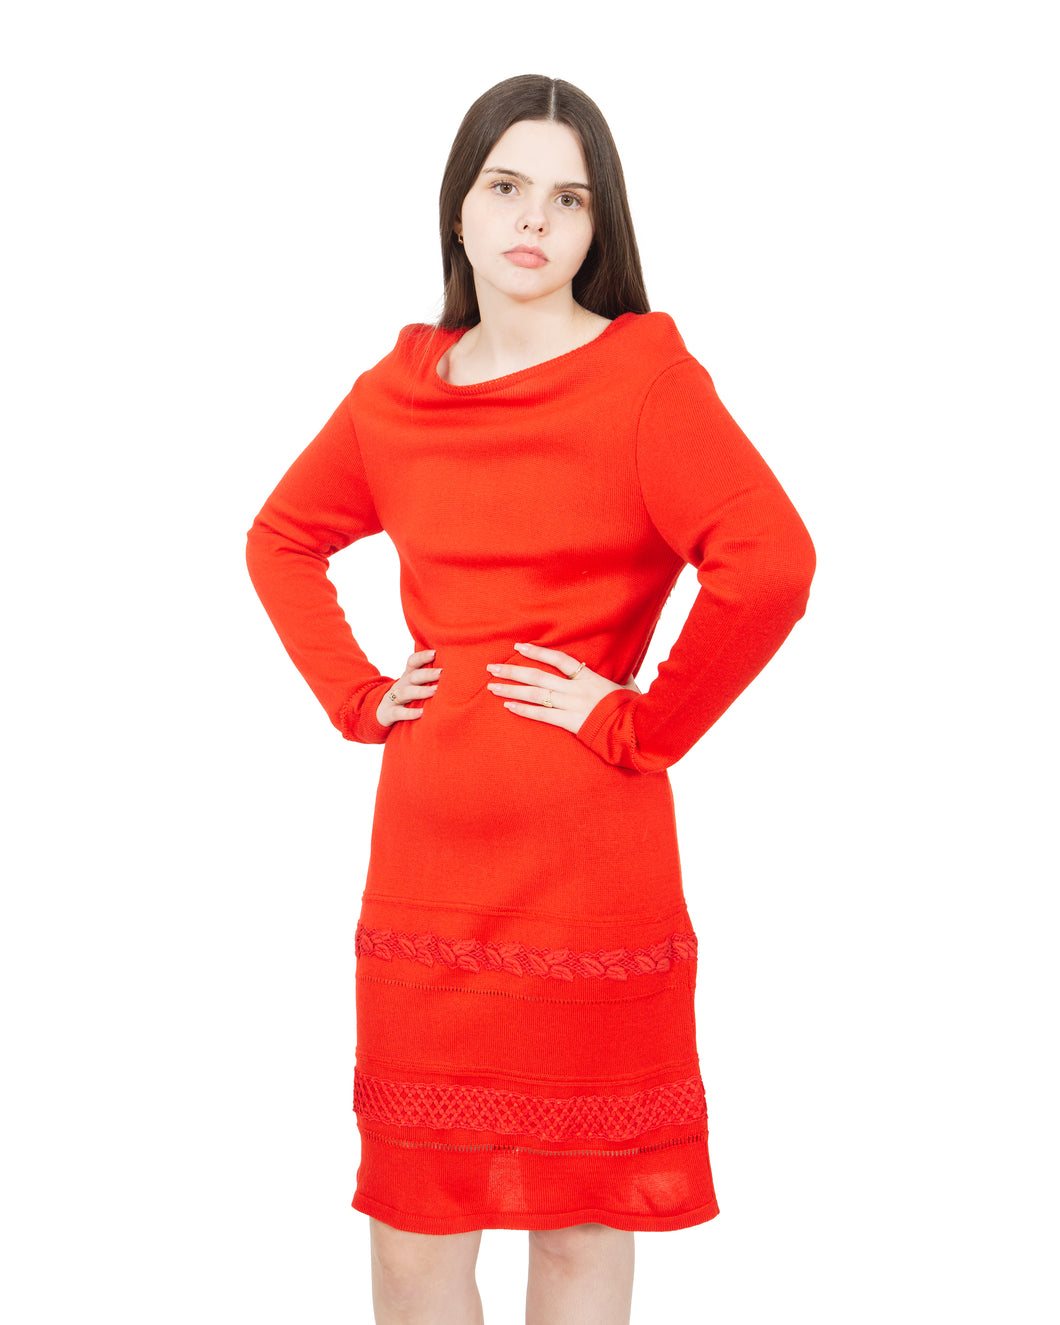 Vintage Red Knit Dress